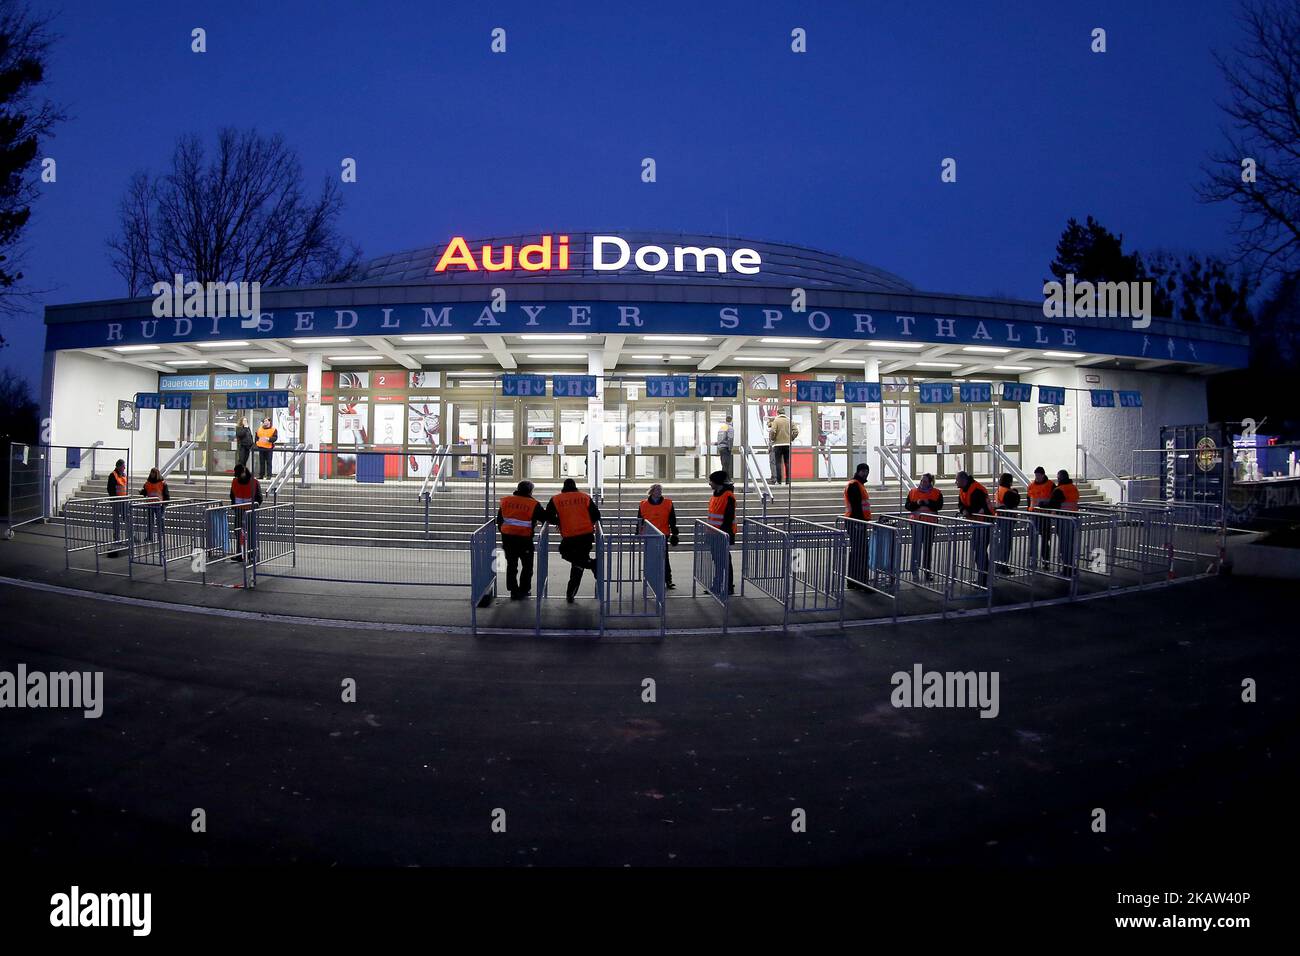 Vue d'ensemble du Top 16 Round 2 de l'Eurocup entre le FC Bayern Munich et Lietuvos Rytas Vilnius au Audi Dome sur 10 janvier 2018 à Munich, Allemagne.(photo de Marcel Engelbrecht/NurPhoto) Banque D'Images